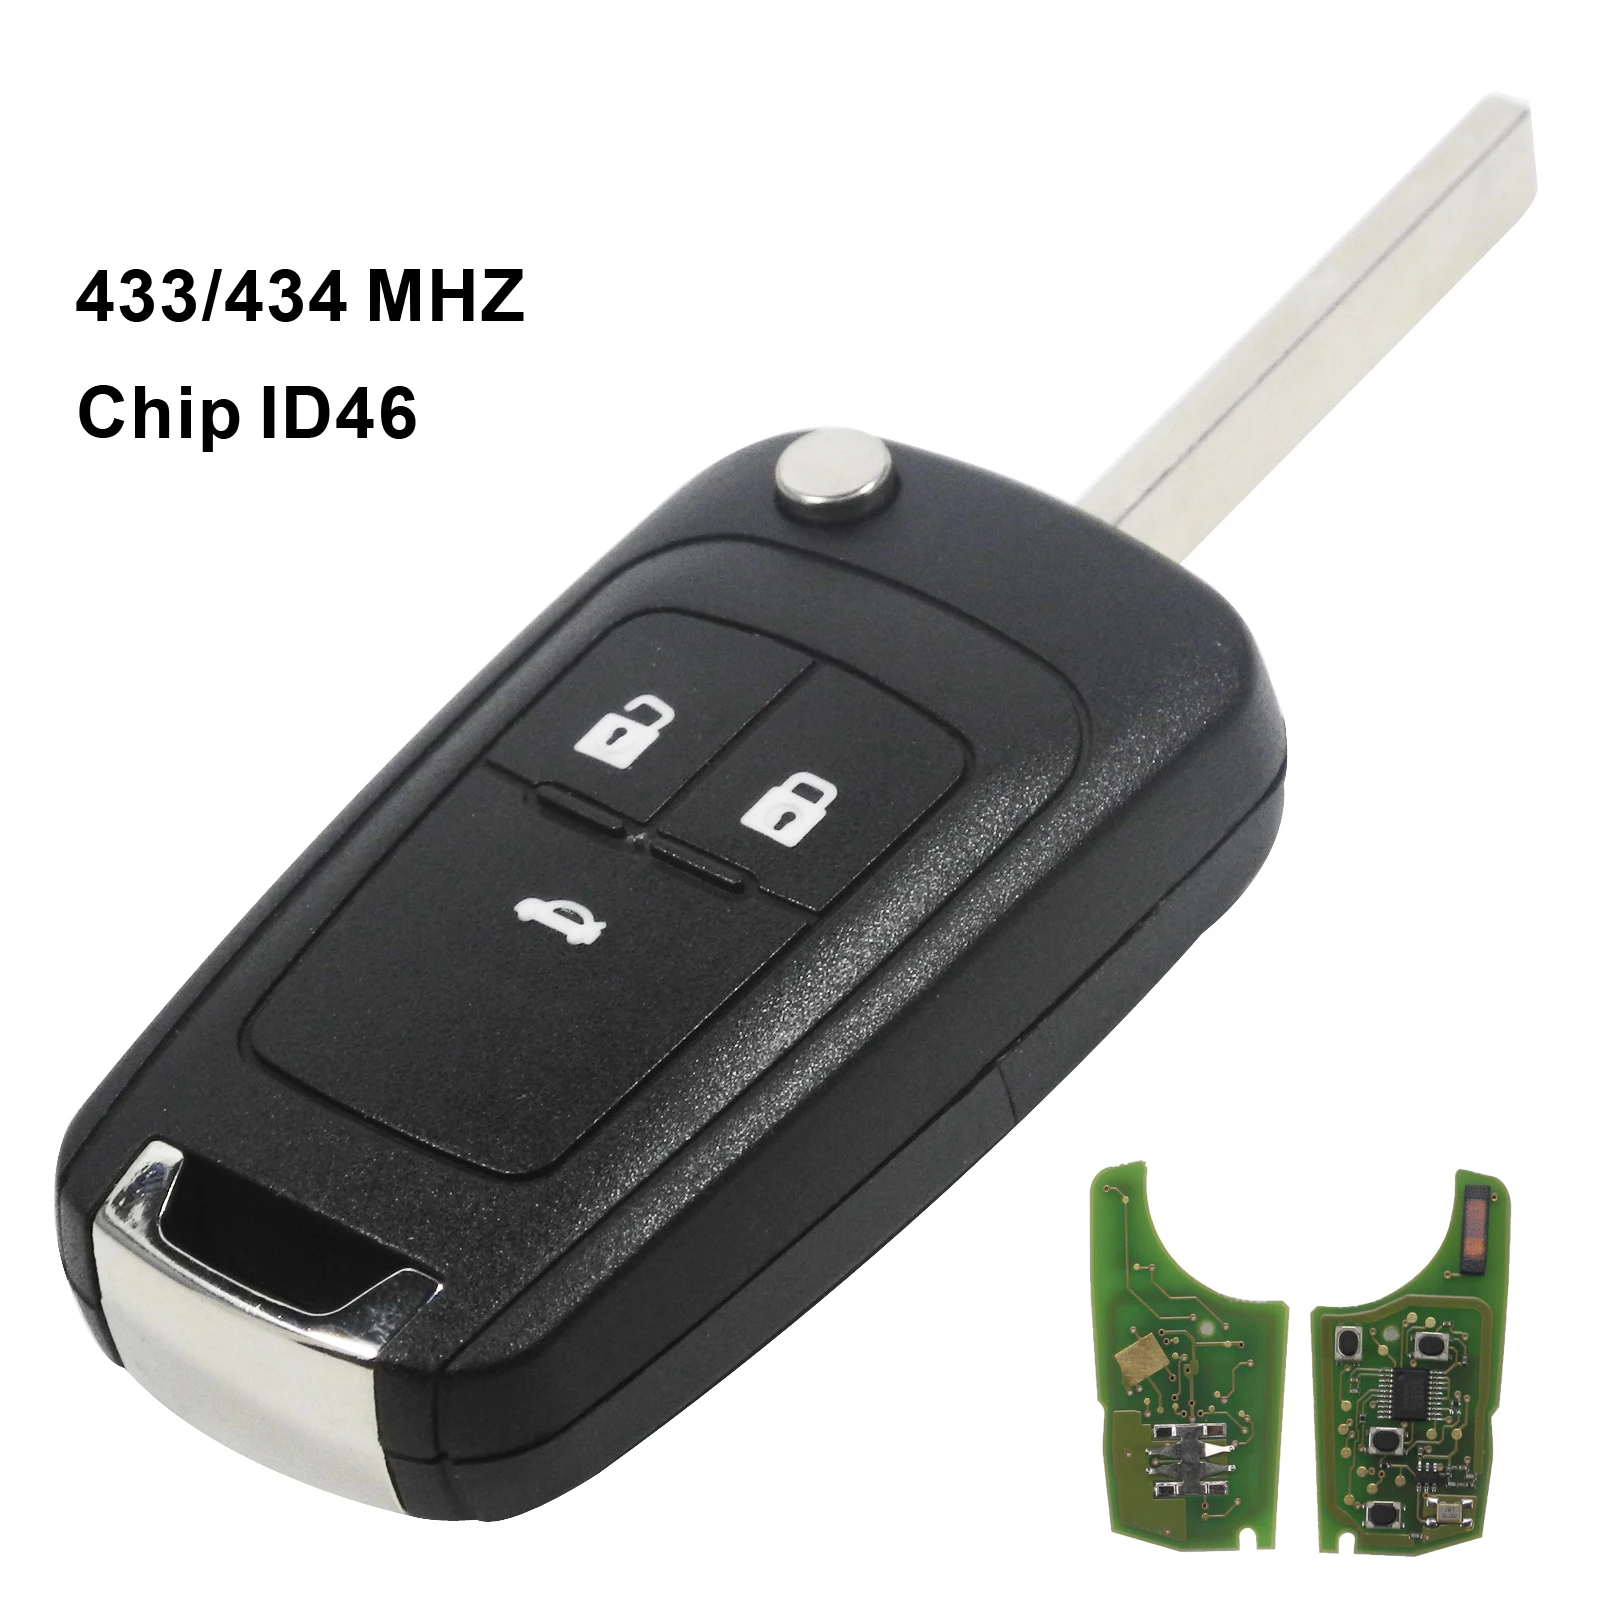 Jingyuqin 2/3/4 кнопки Uncut дистанционного ключа автомобиля DIY для Chevrolet Cruze Aveo Орландо парус 2 кнопки с 433 МГц ID46 PCF7931E чип - Количество кнопок: 3 Кнопки